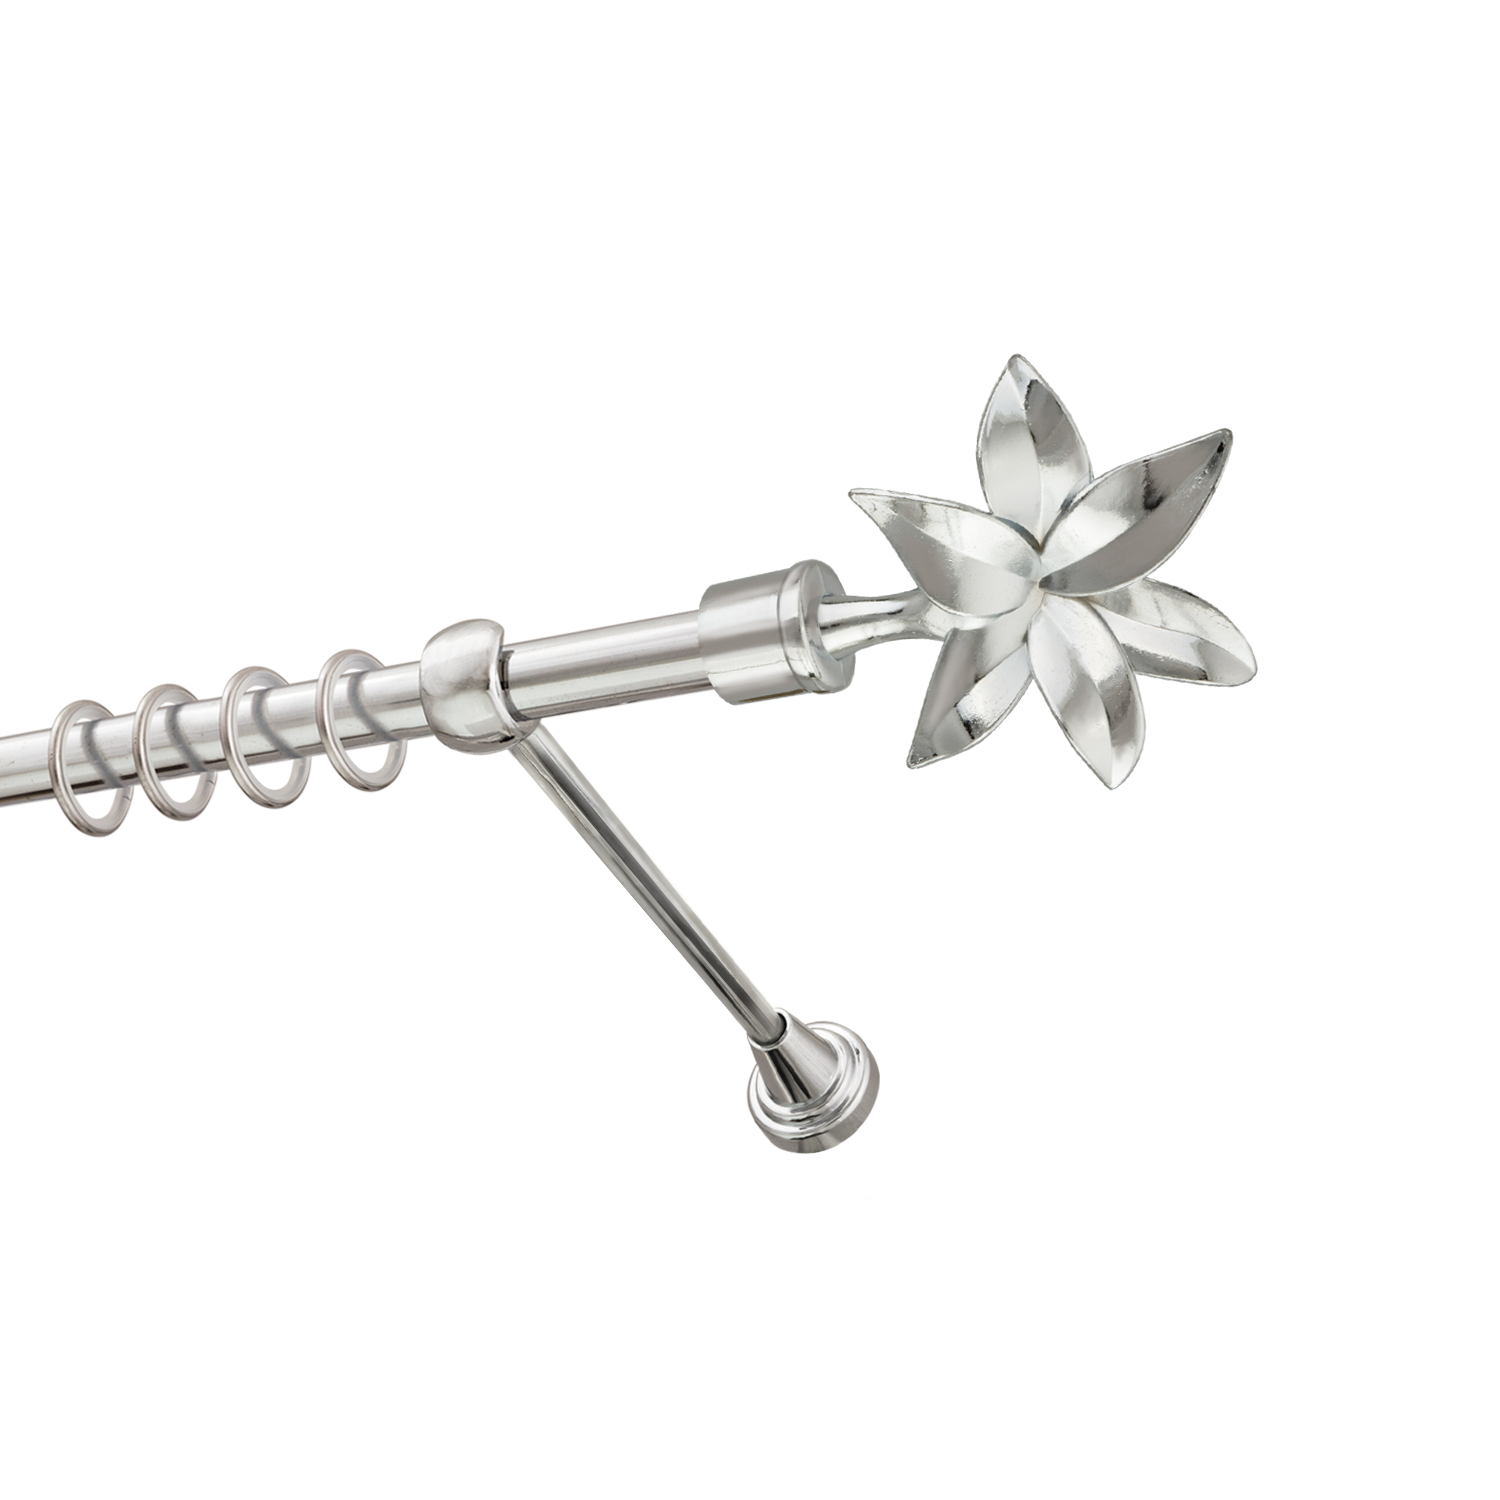 Металлический карниз для штор Магнолия, однорядный 16 мм, серебро, гладкая штанга, длина 300 см - фото Wikidecor.ru